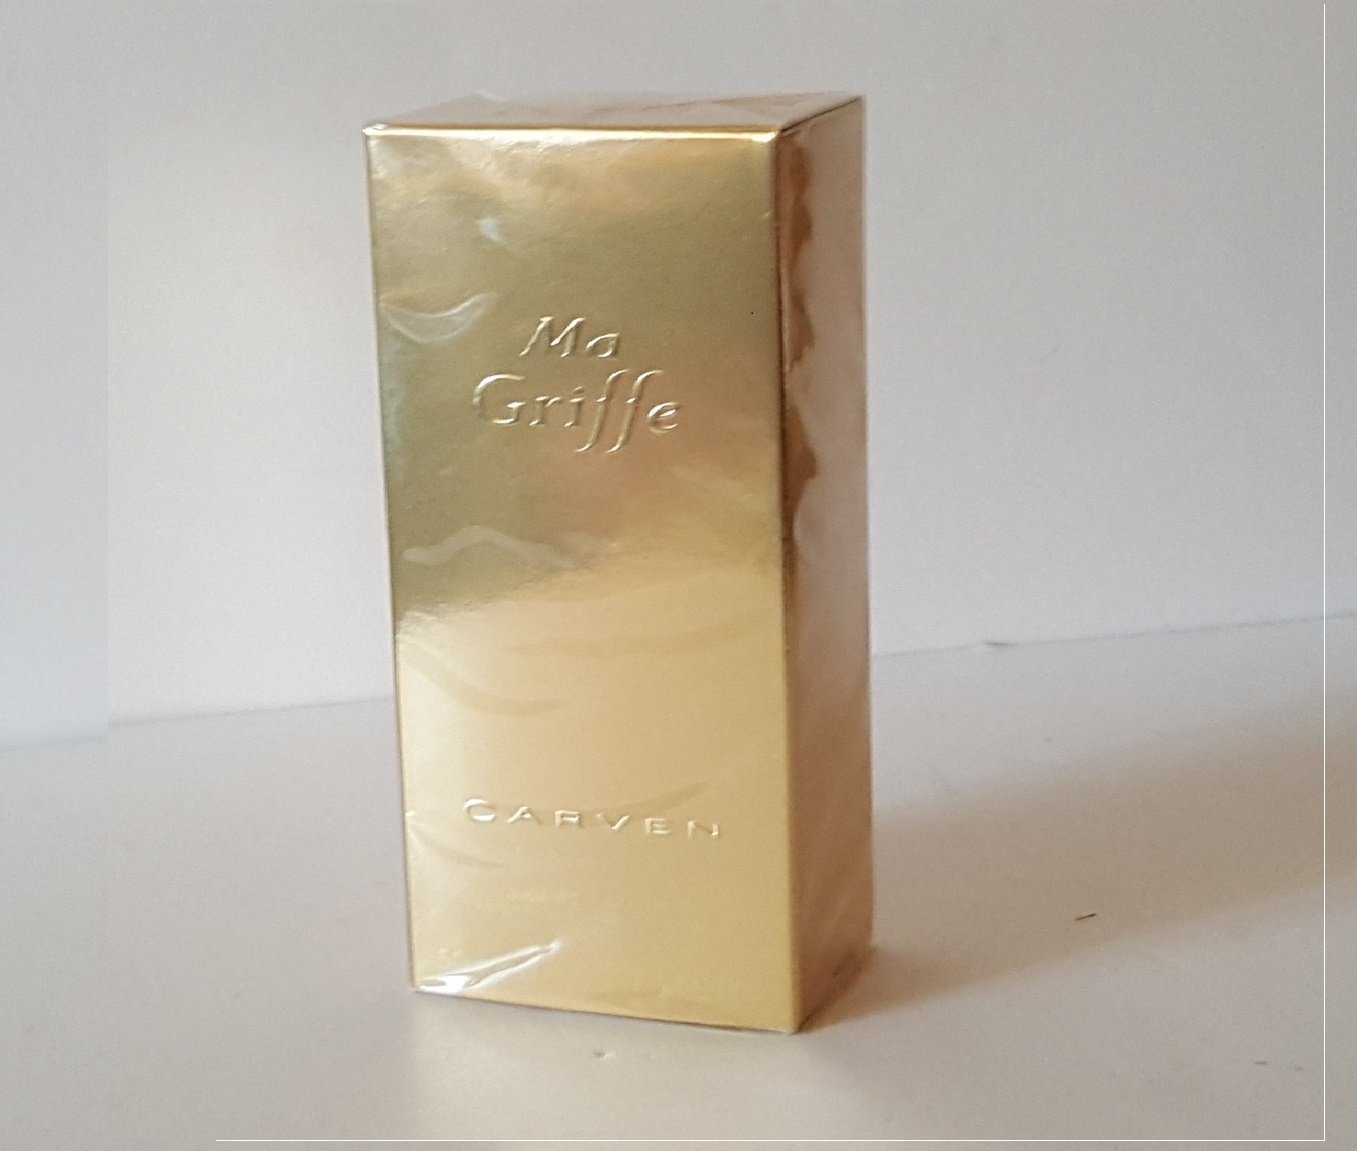 Carven Ma Griffe Parfum de Toilette Rare Vintage Huge 16 fl oz! New Box  Perfume